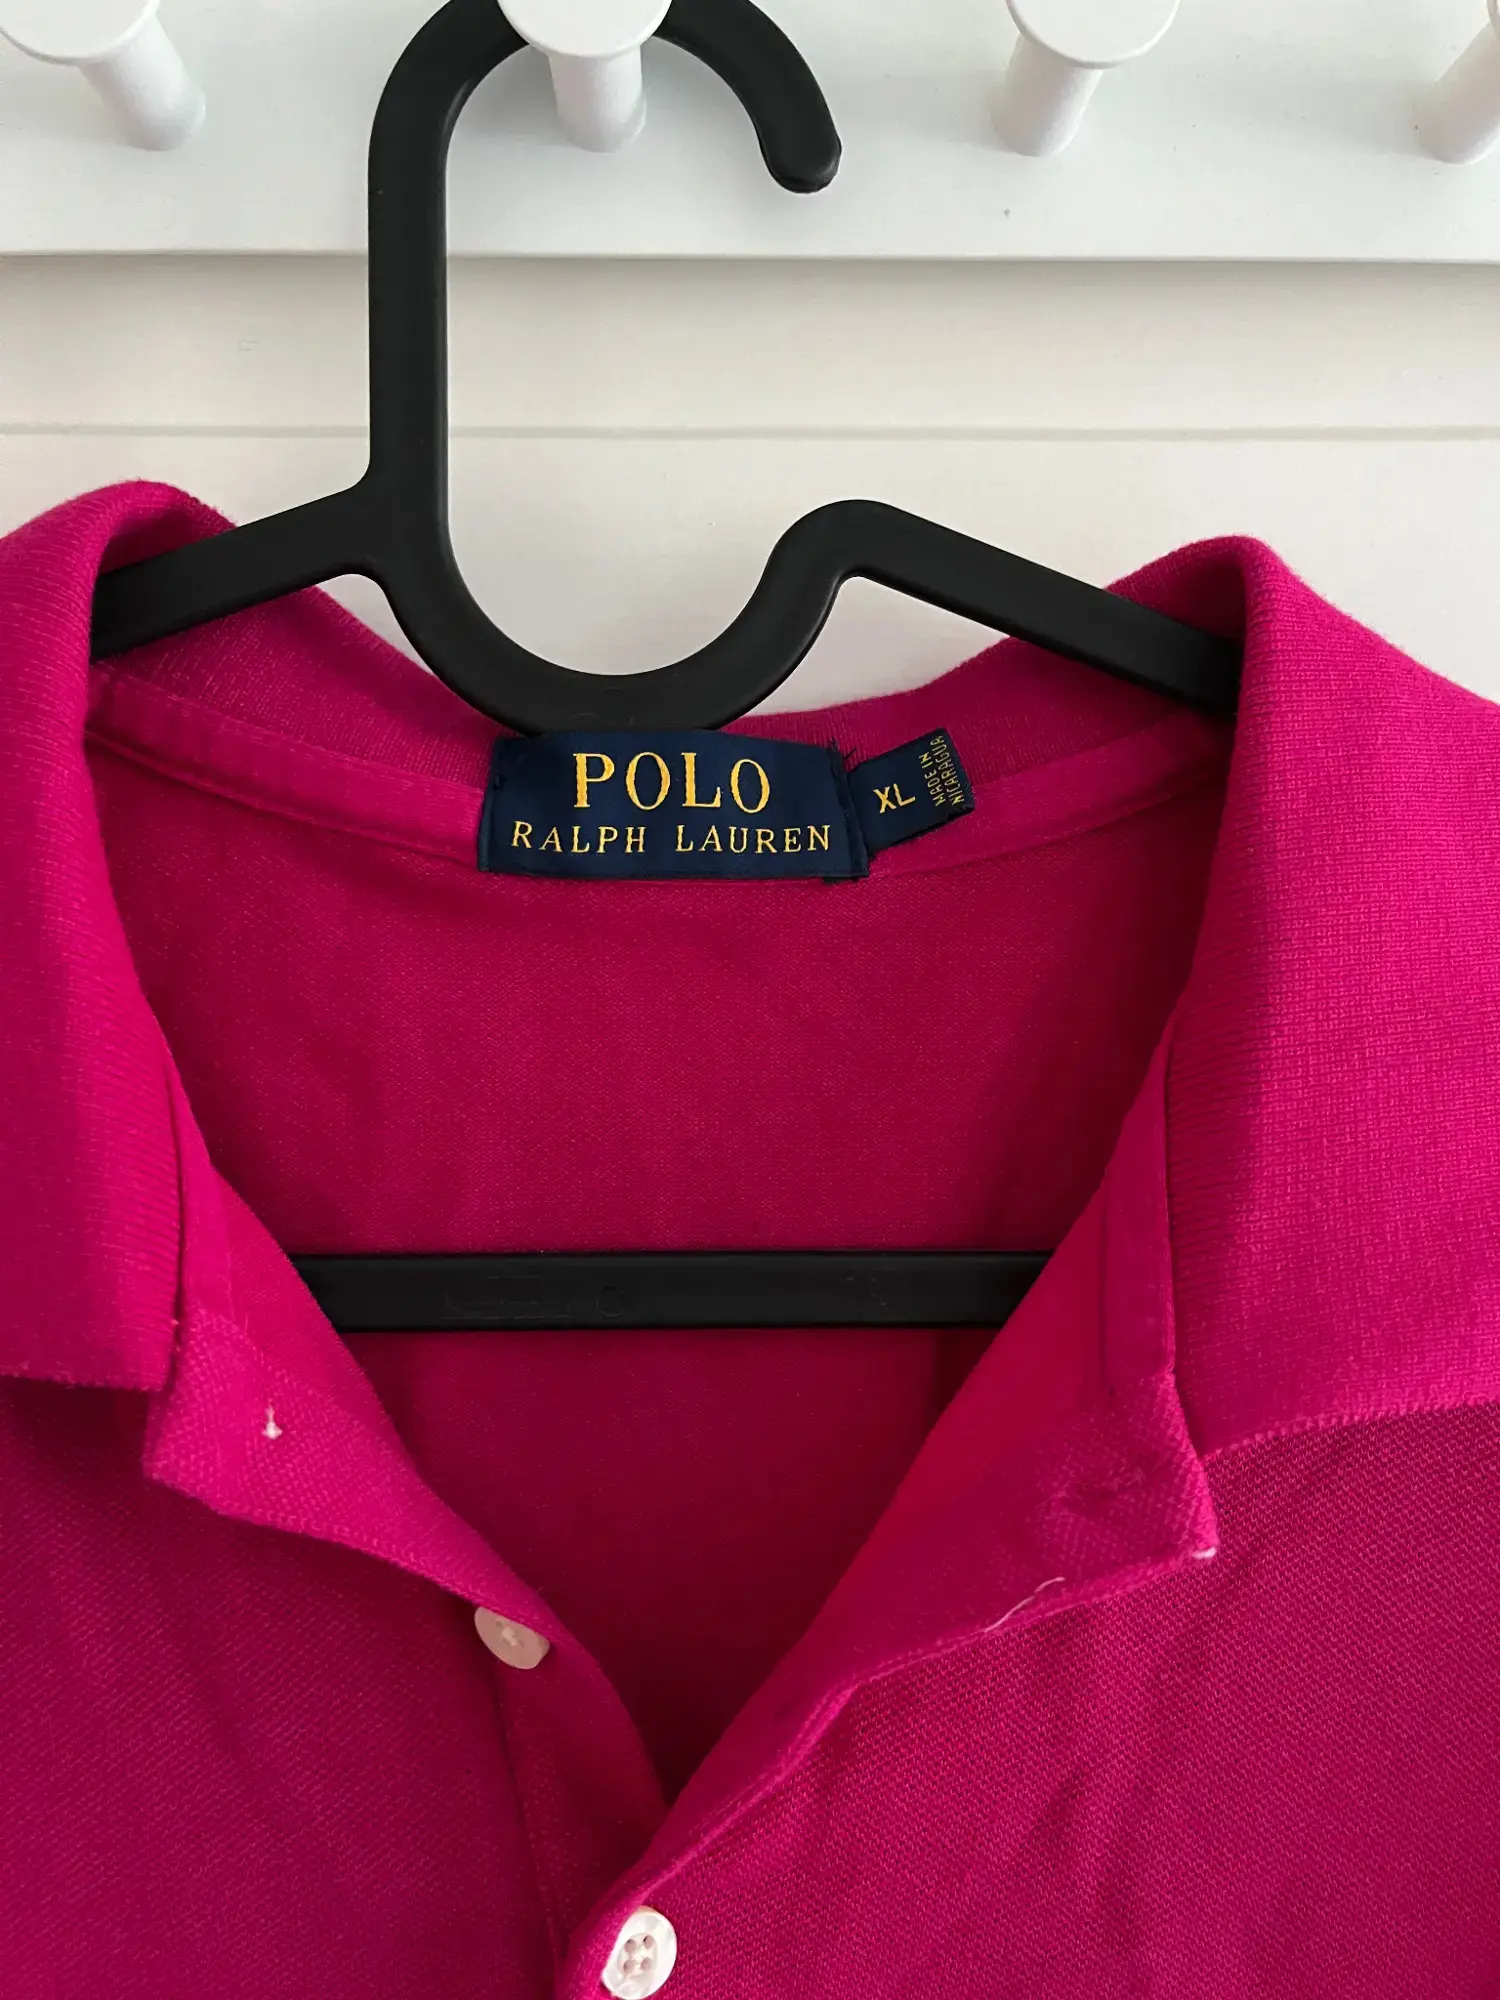 Polo Ralph Lauren t-shirt